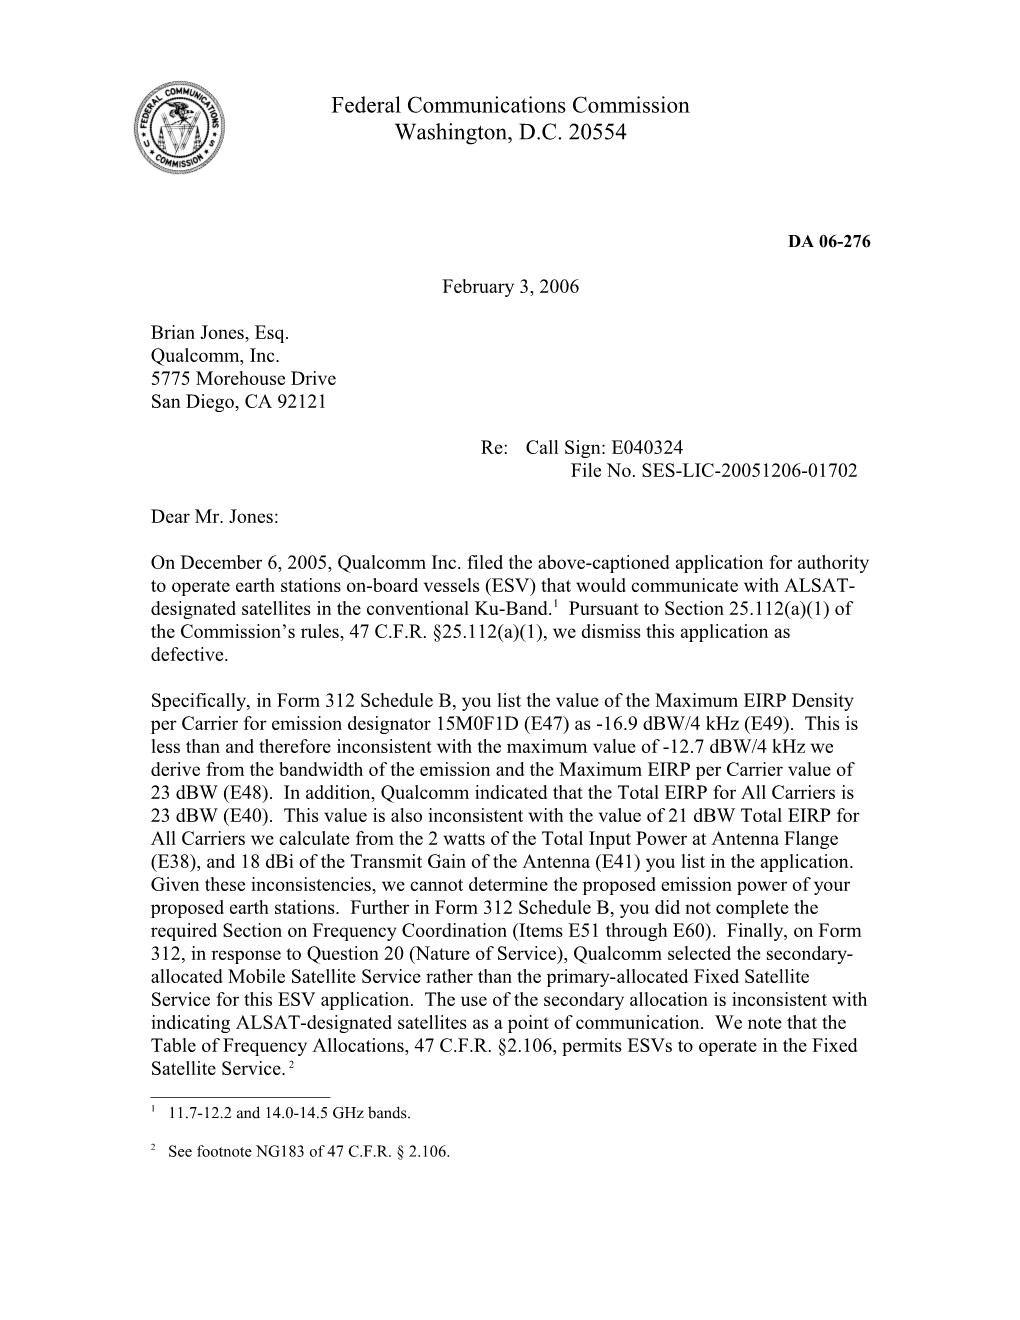 Federal Communications Commission DA 05-276